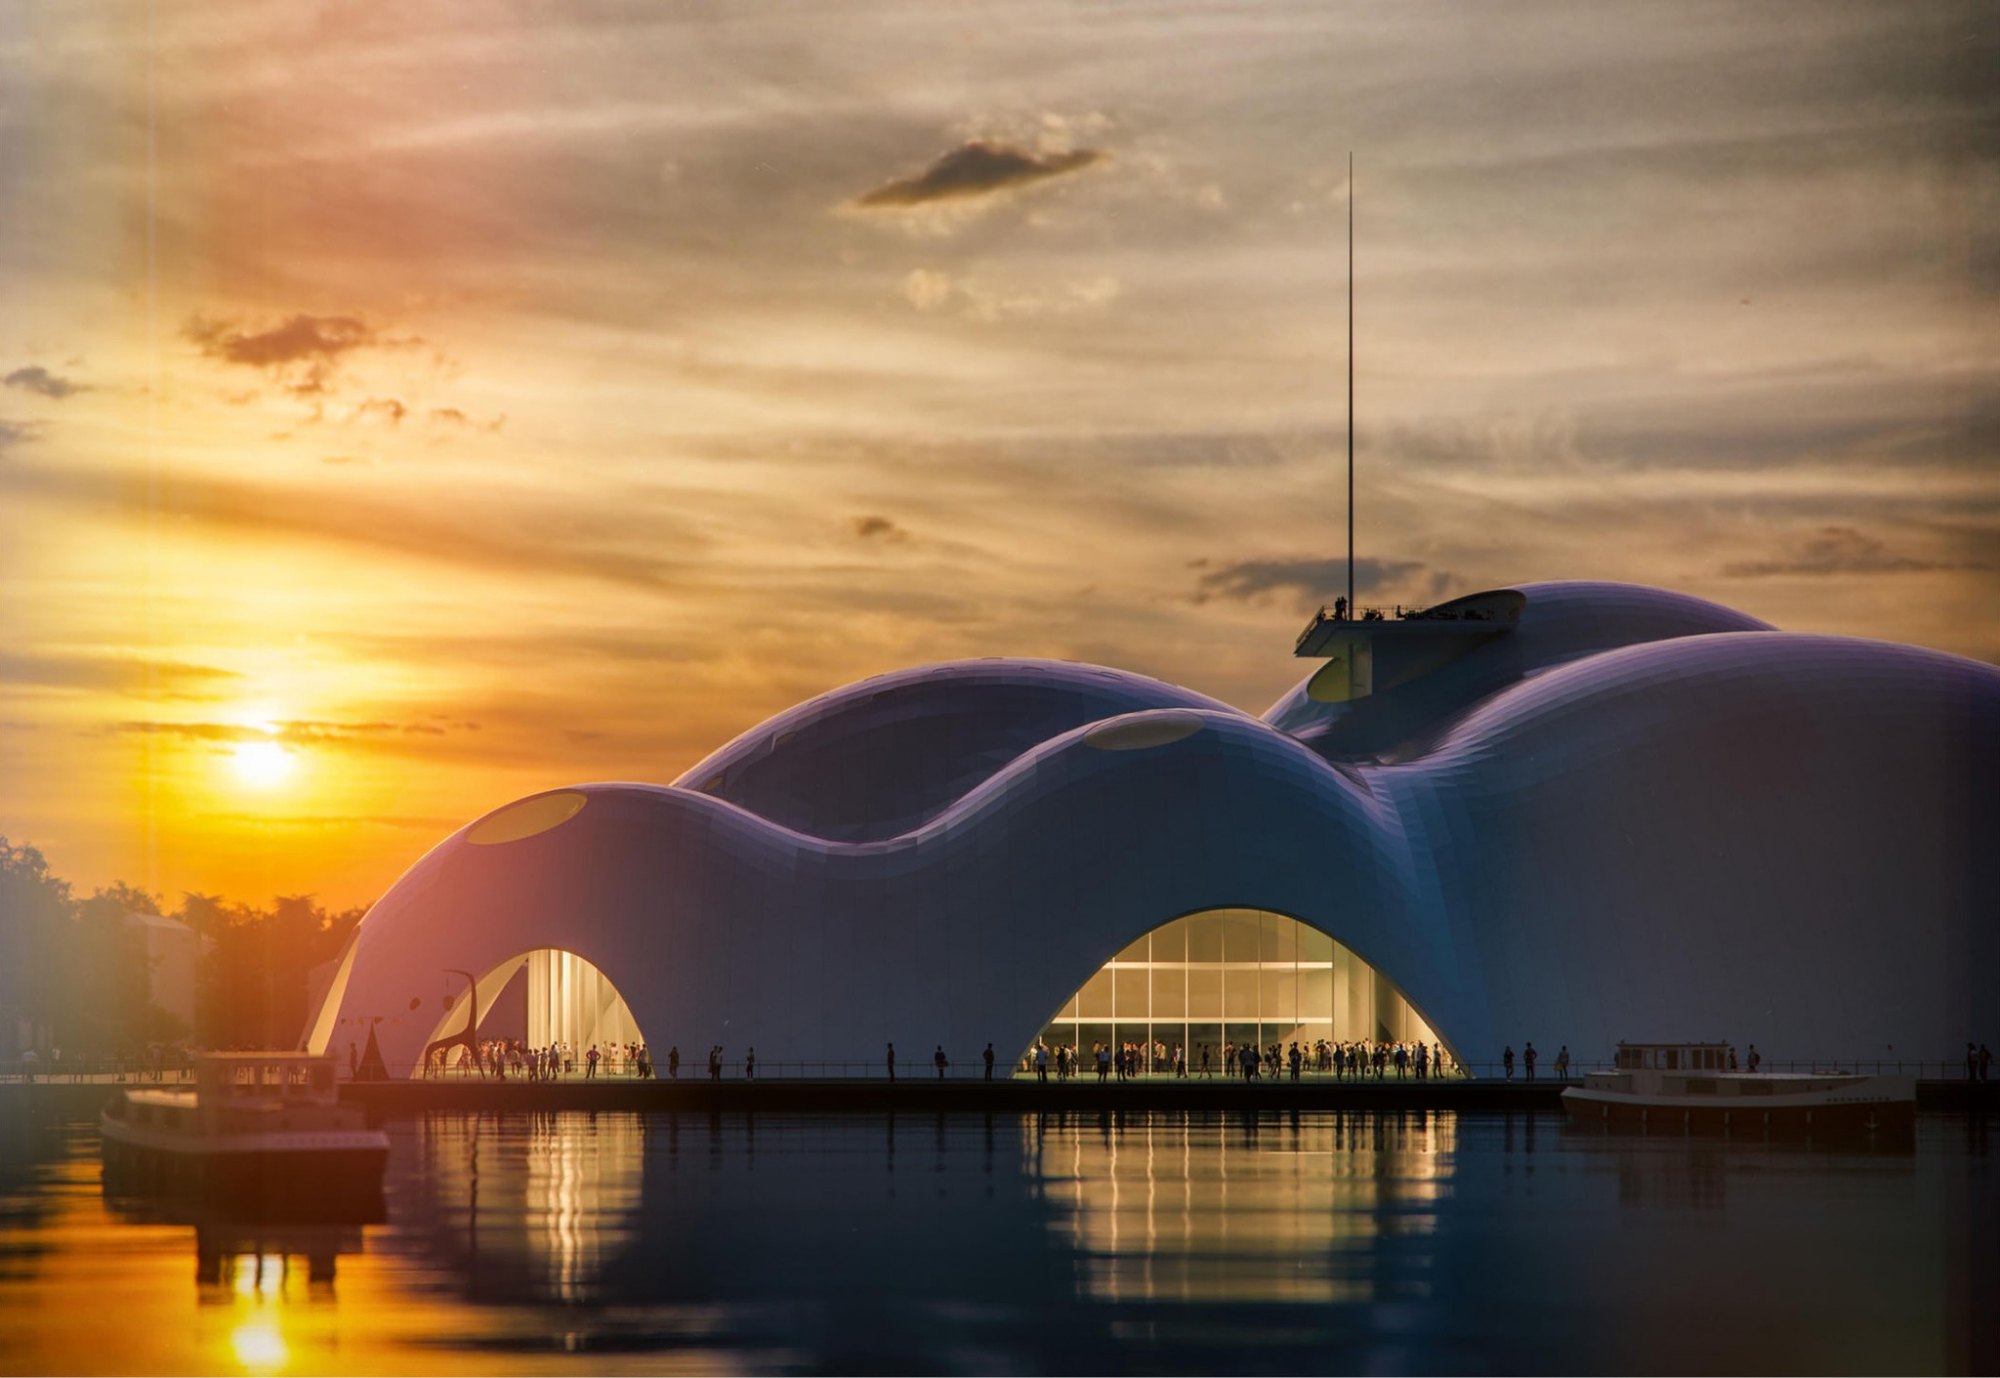 Isola della Musica design by Renzo Piano Building Workshop